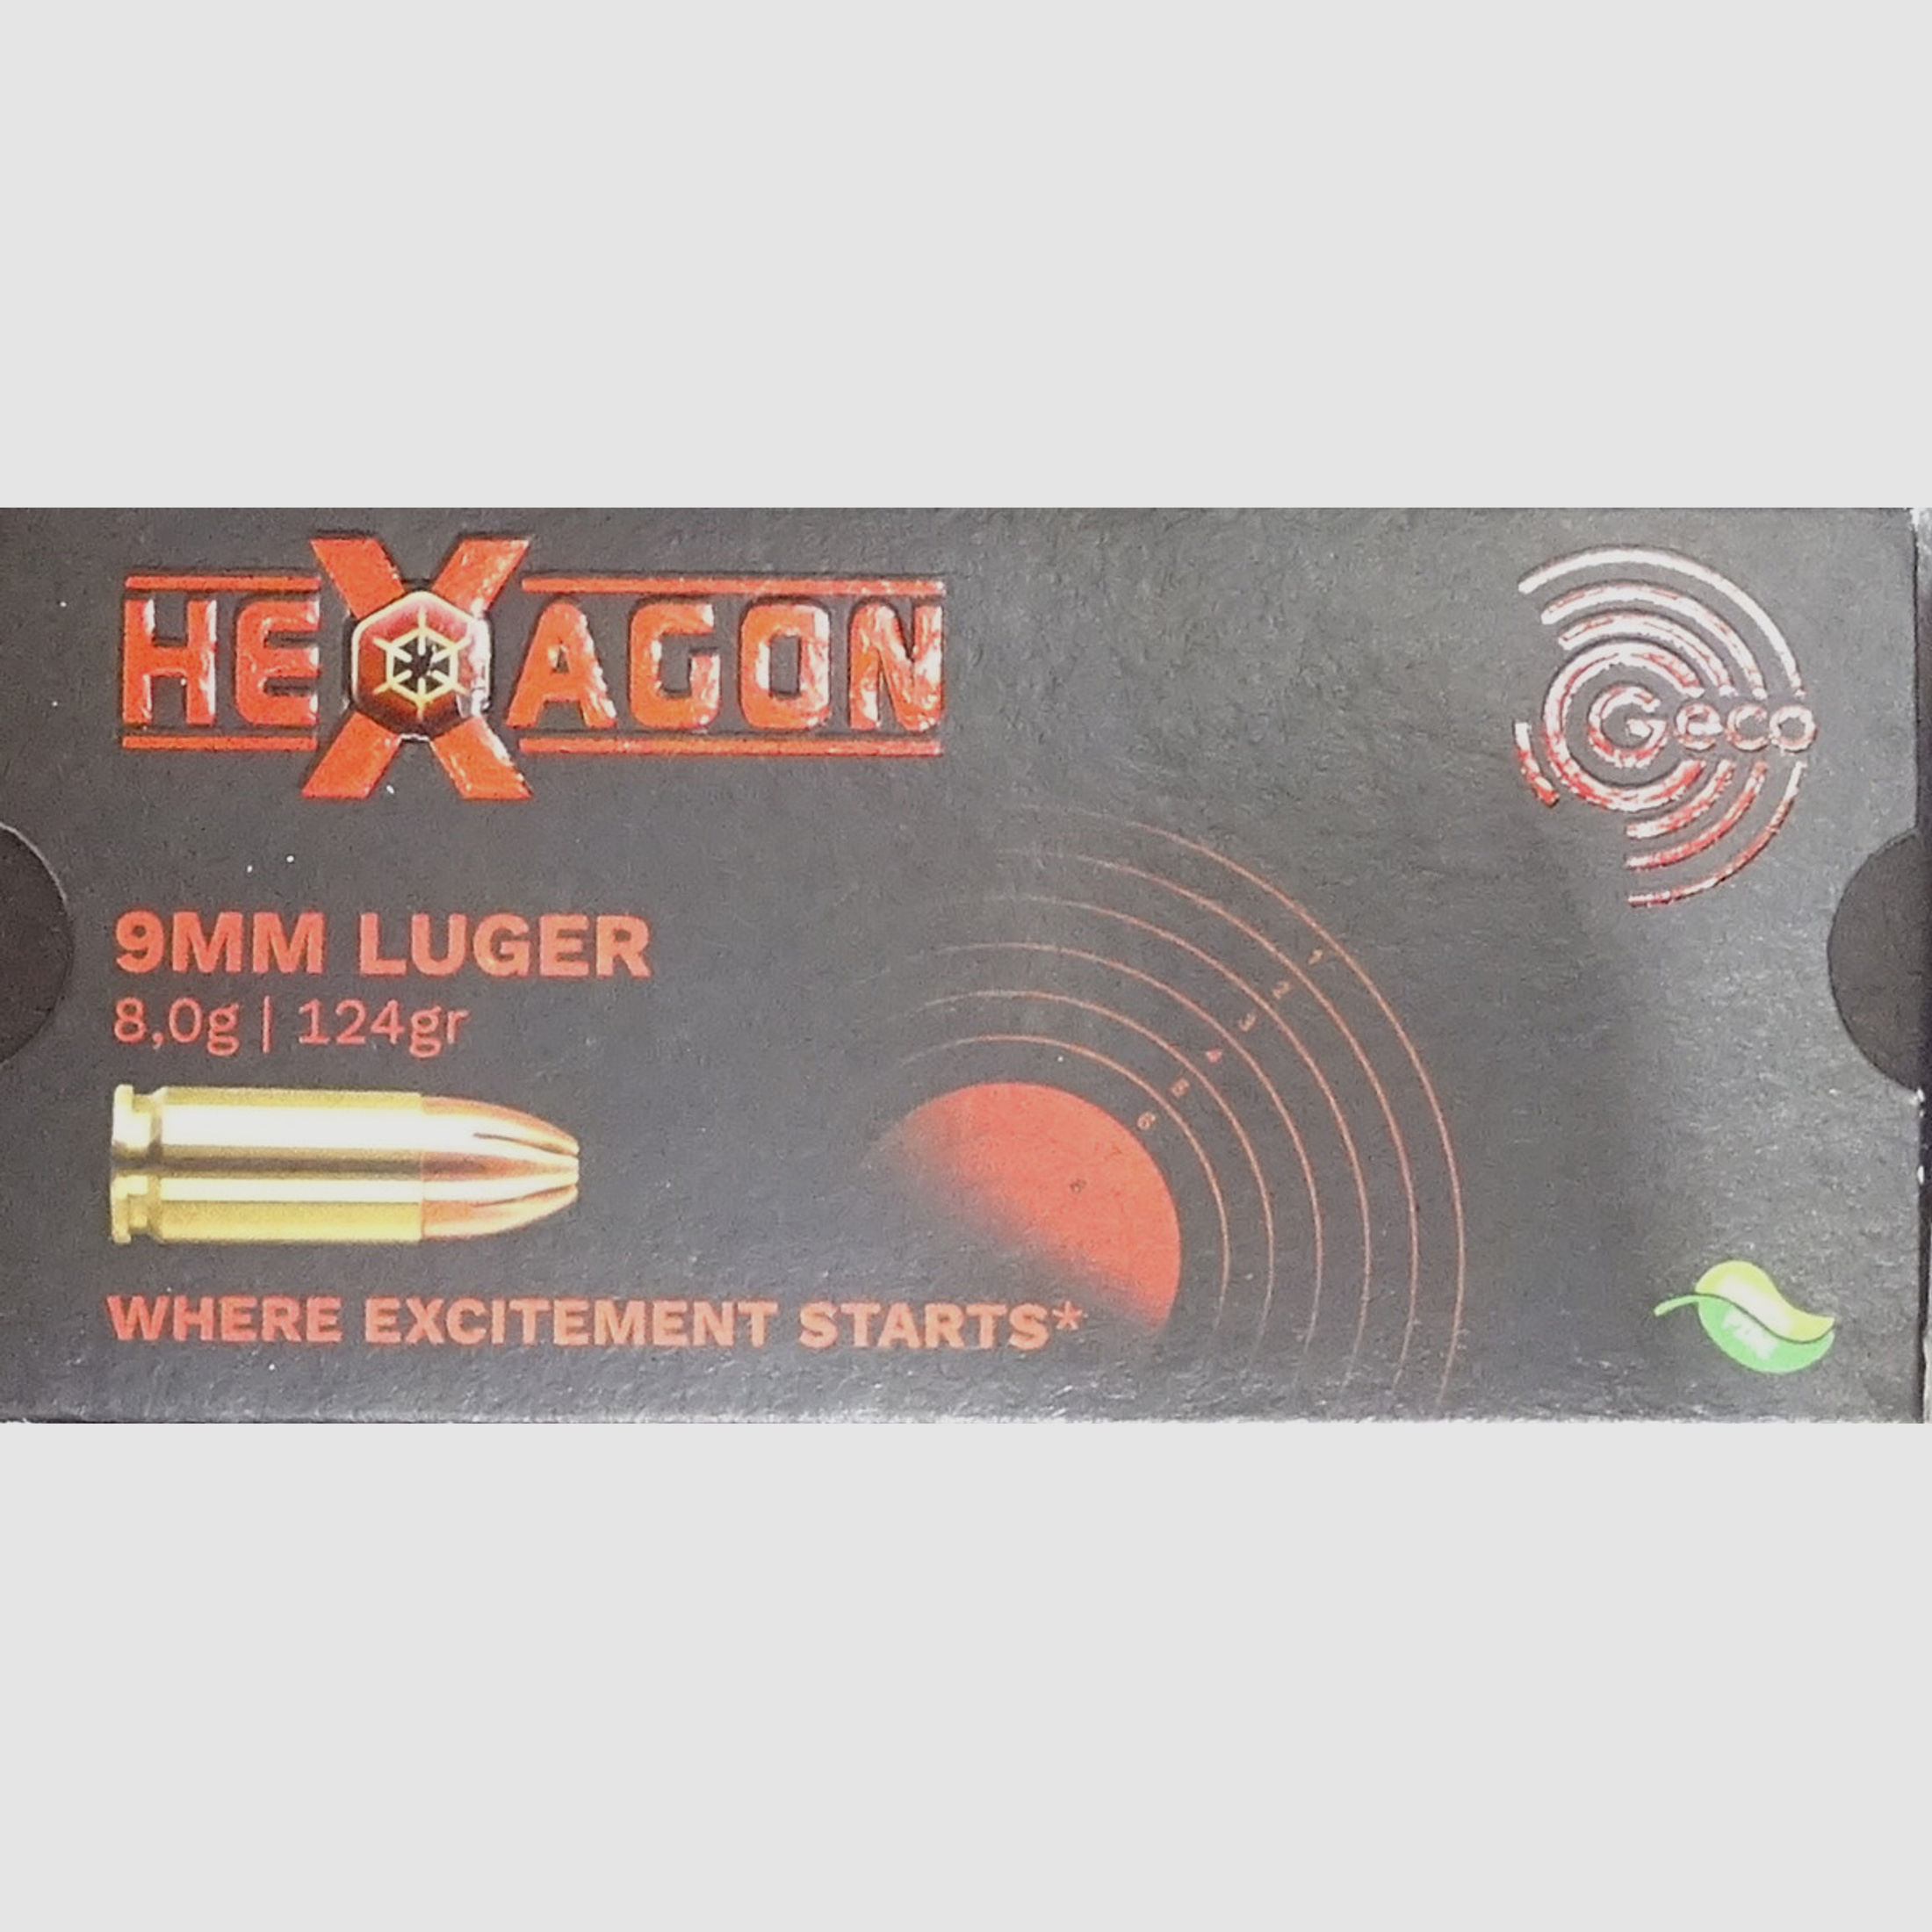 Geco 9mm luger HEXAGON 124grs - 1000 Schuss